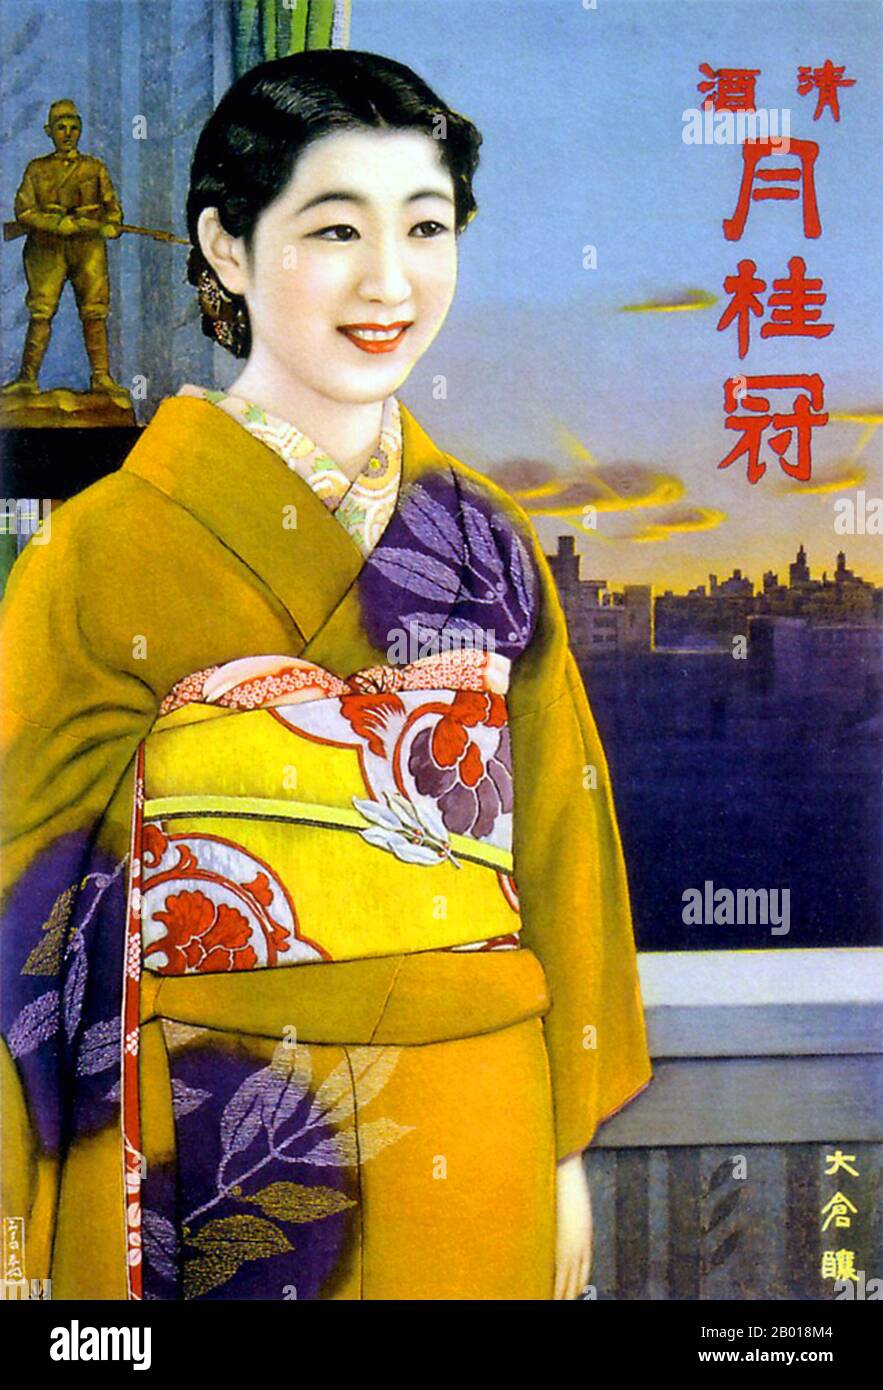 Japan: Werbeplakat für Gekkeikan Sake, c. 1935-1938. Der steigende Militarismus zeigt sich in dieser Werbung für Gekkeikan. Eine Japanerin im traditionellen Kimono steht vor dem Modell eines Soldaten mit Pistole. Auf dem Plakat ist kein Sake zu sehen. Stockfoto